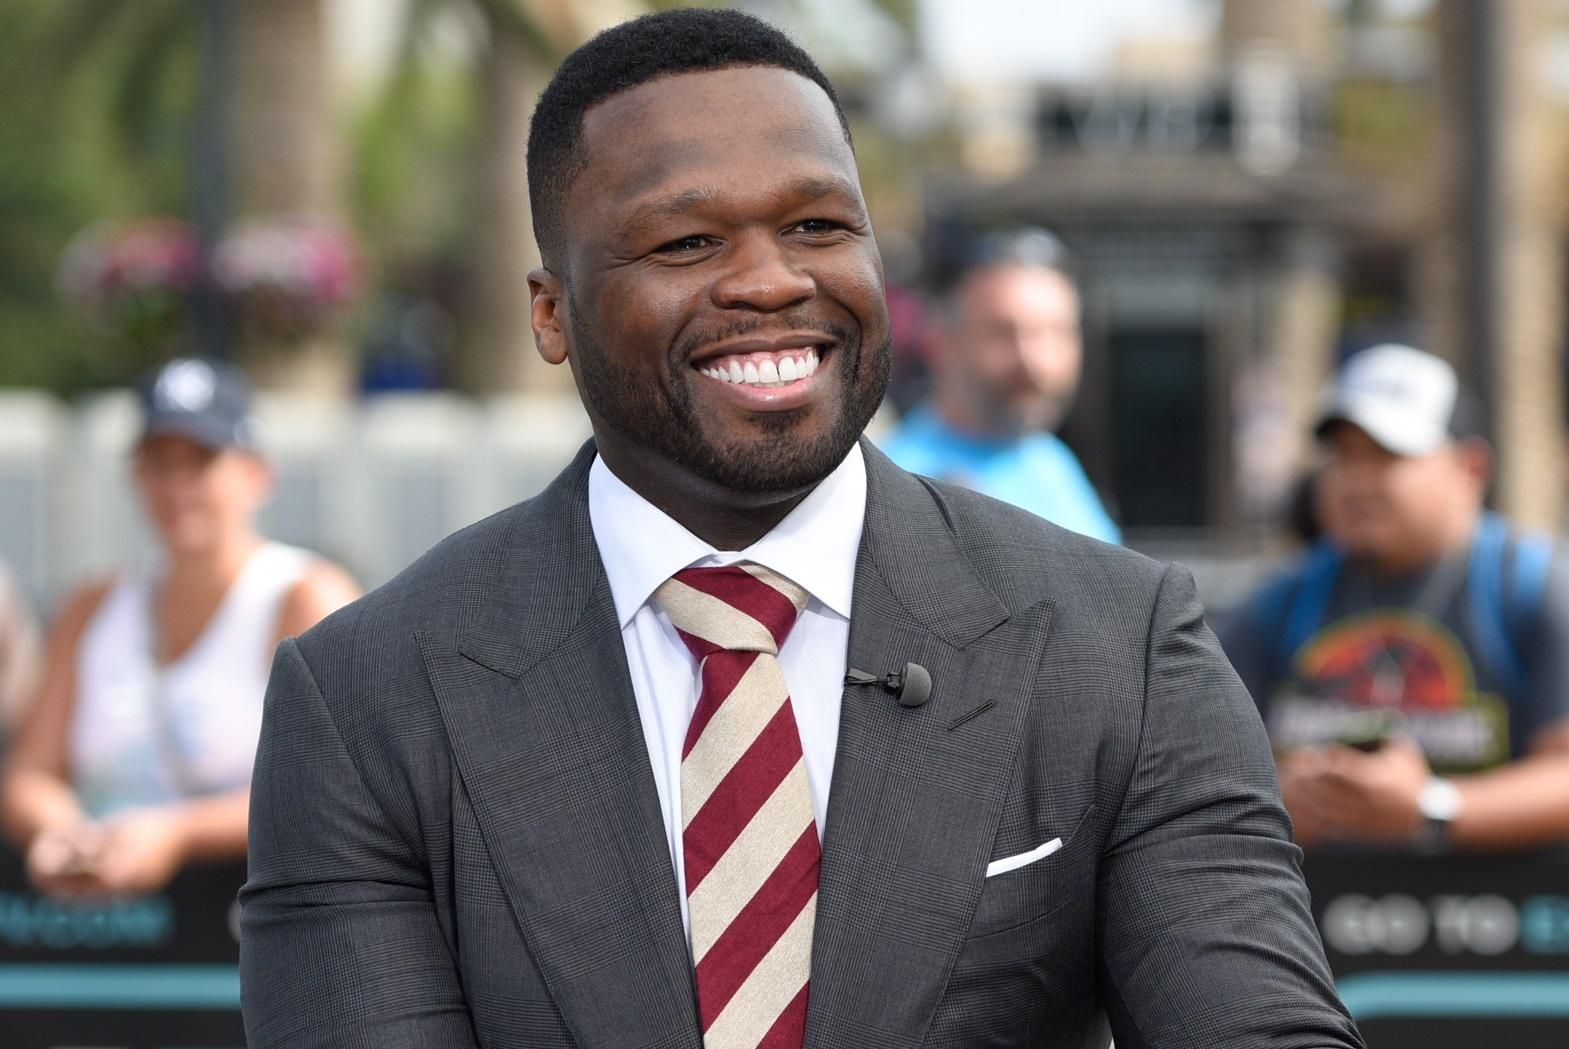 50 Cent викупив 200 квитків на концерт конкурента, щоб той виступав у напівпорожньому залі